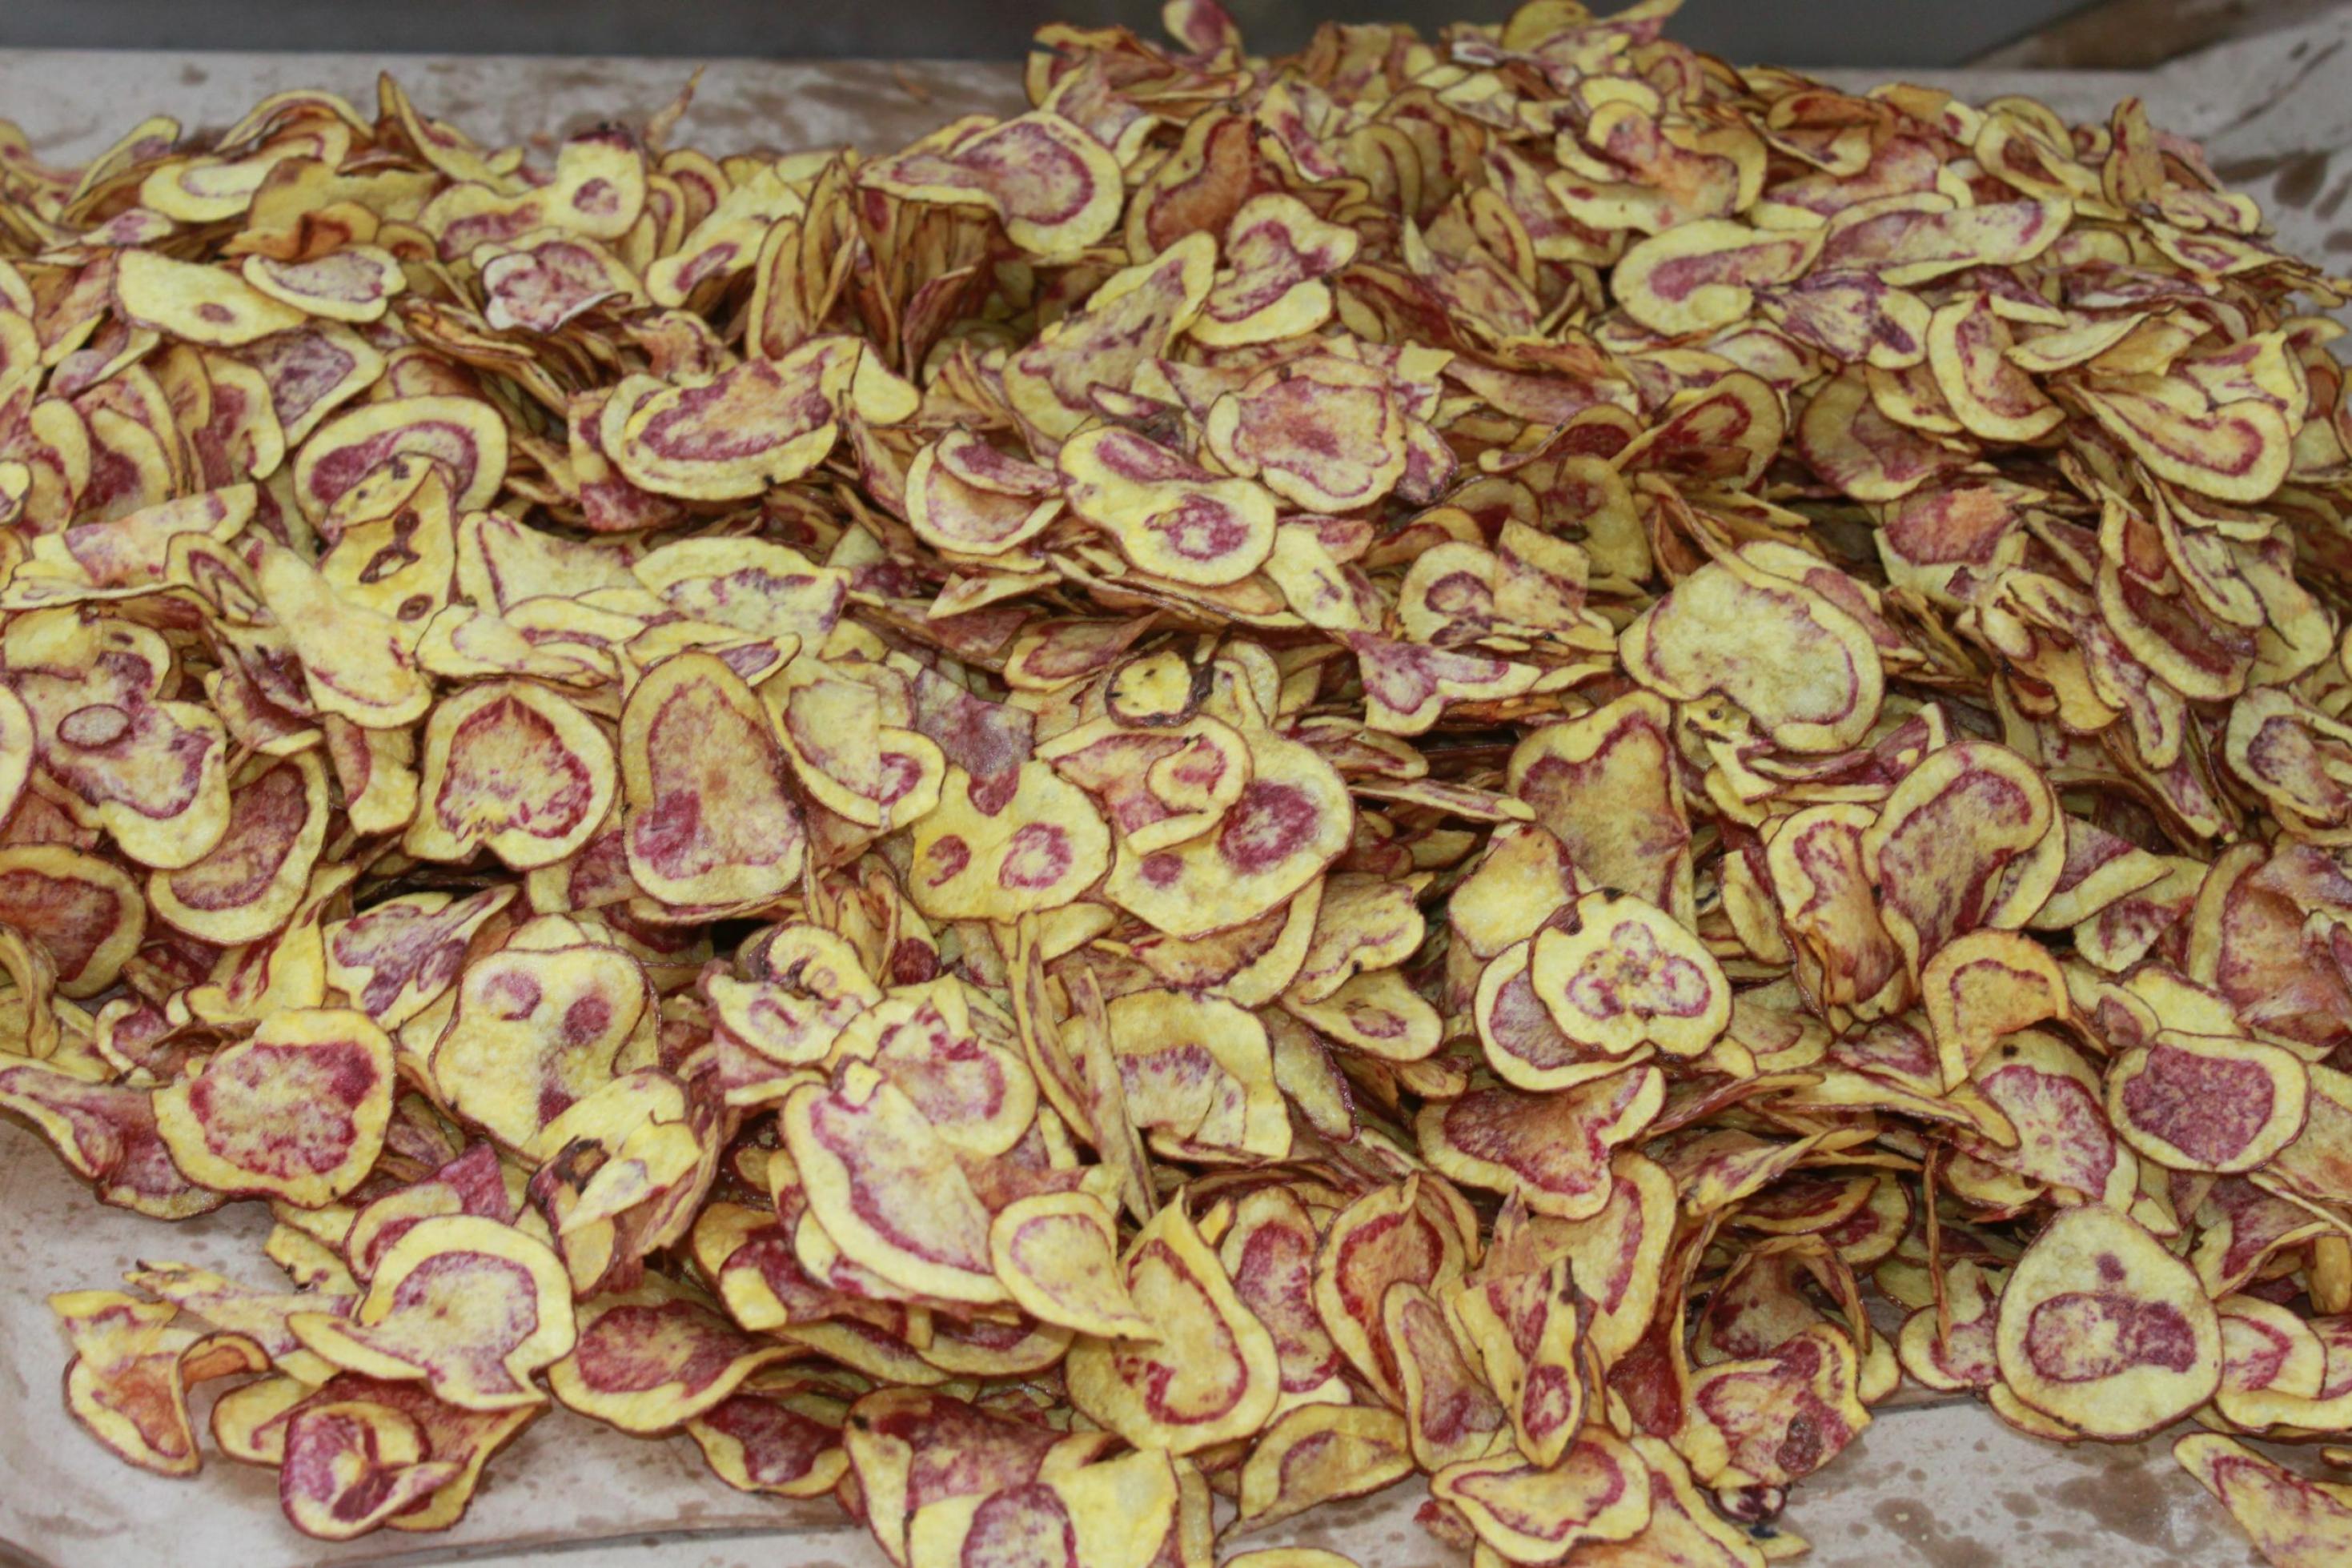 Das ganze Foto zeigt Kartoffelchips, die rot gemustert sind. Sie wurden aus einer alten peruanischen Sorte hergestellt.